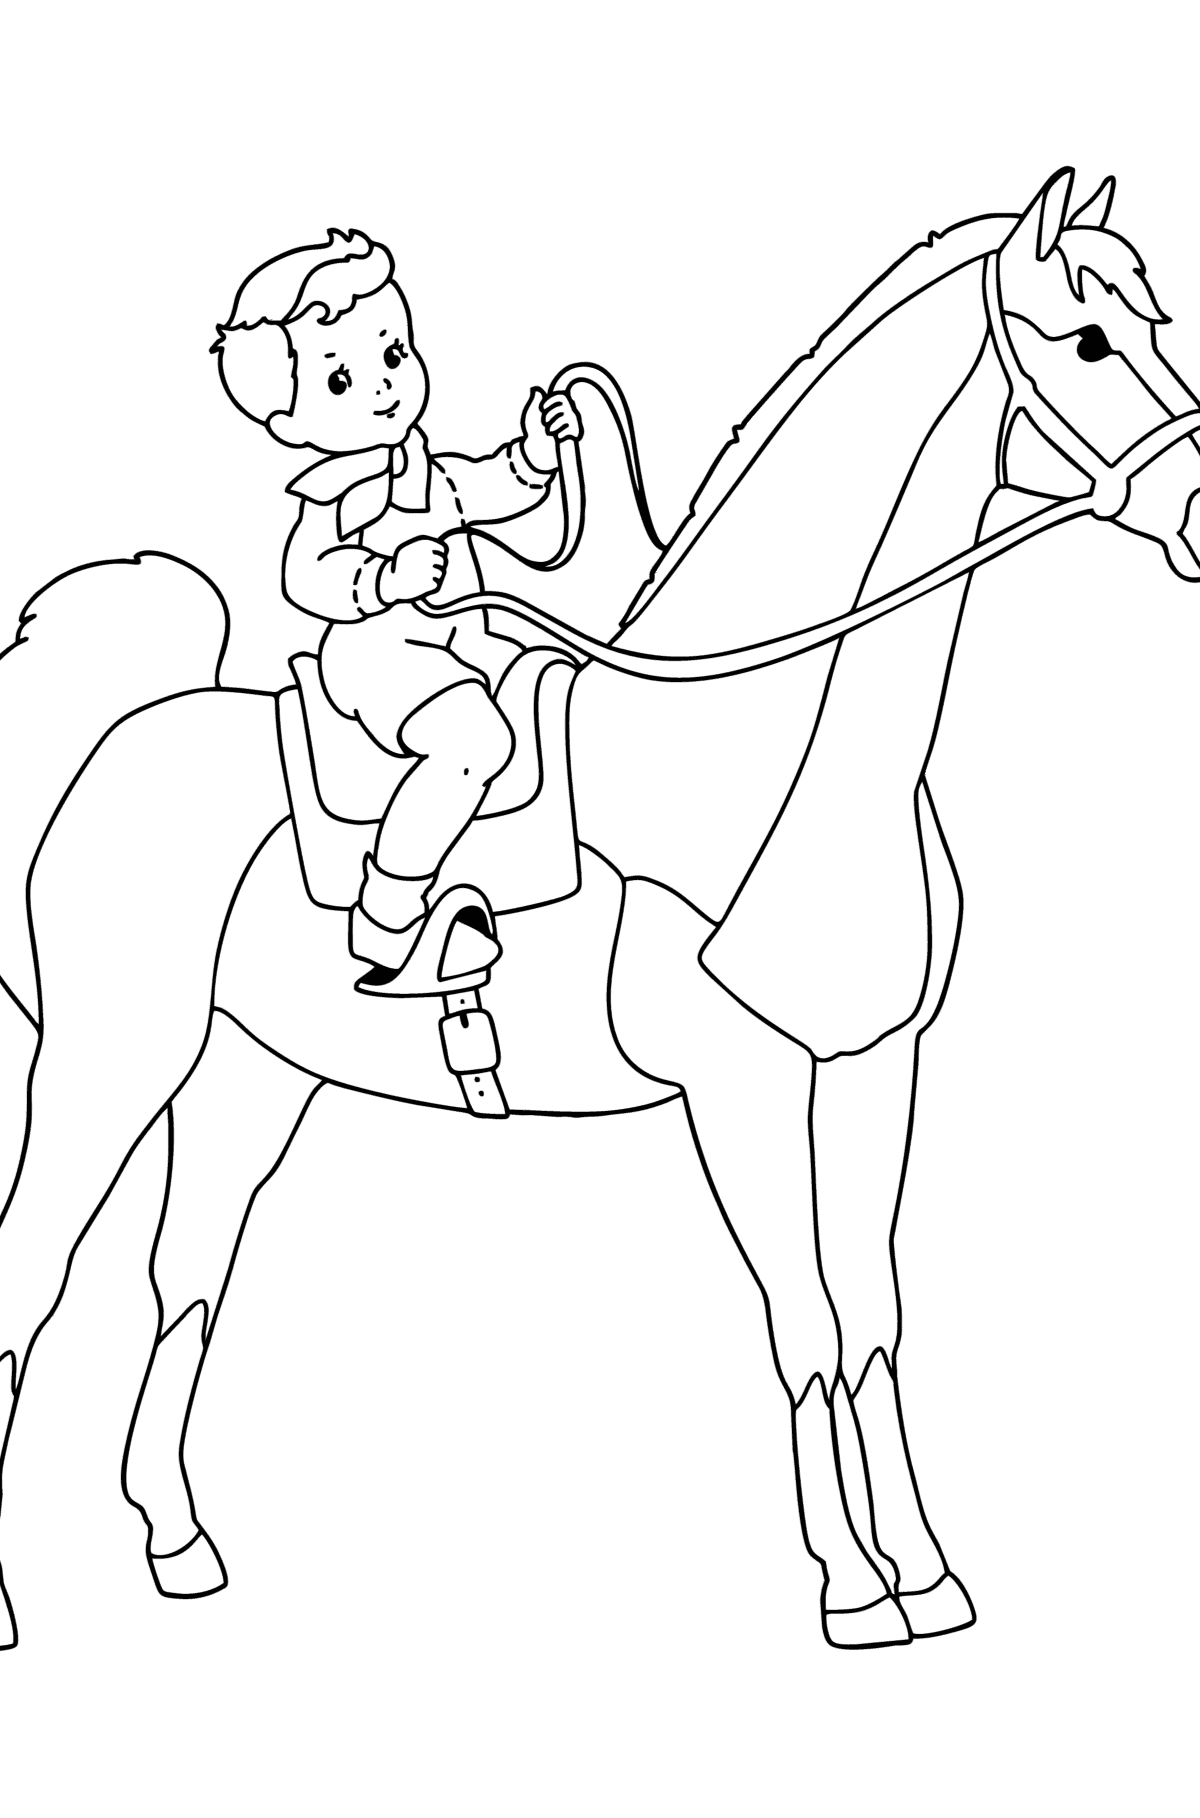 Kolorowanka Chłopiec na koniu - Kolorowanki dla dzieci